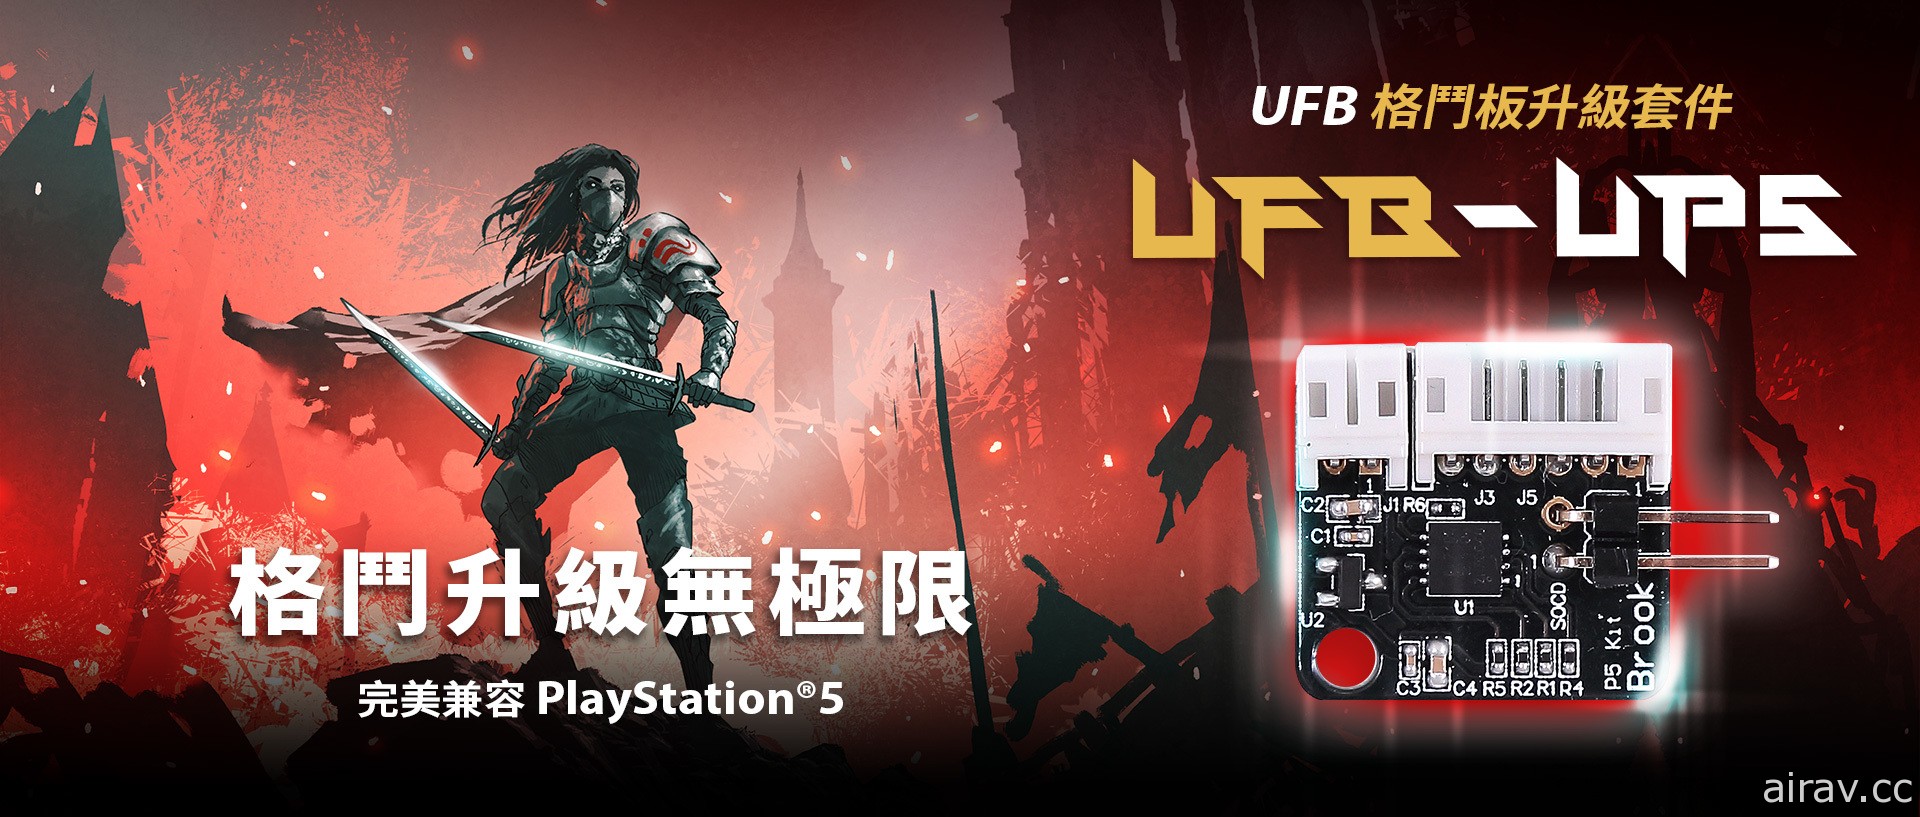 支援 PS5 遊戲的格鬥搖桿機板升級套件「UFB-UP5」登場